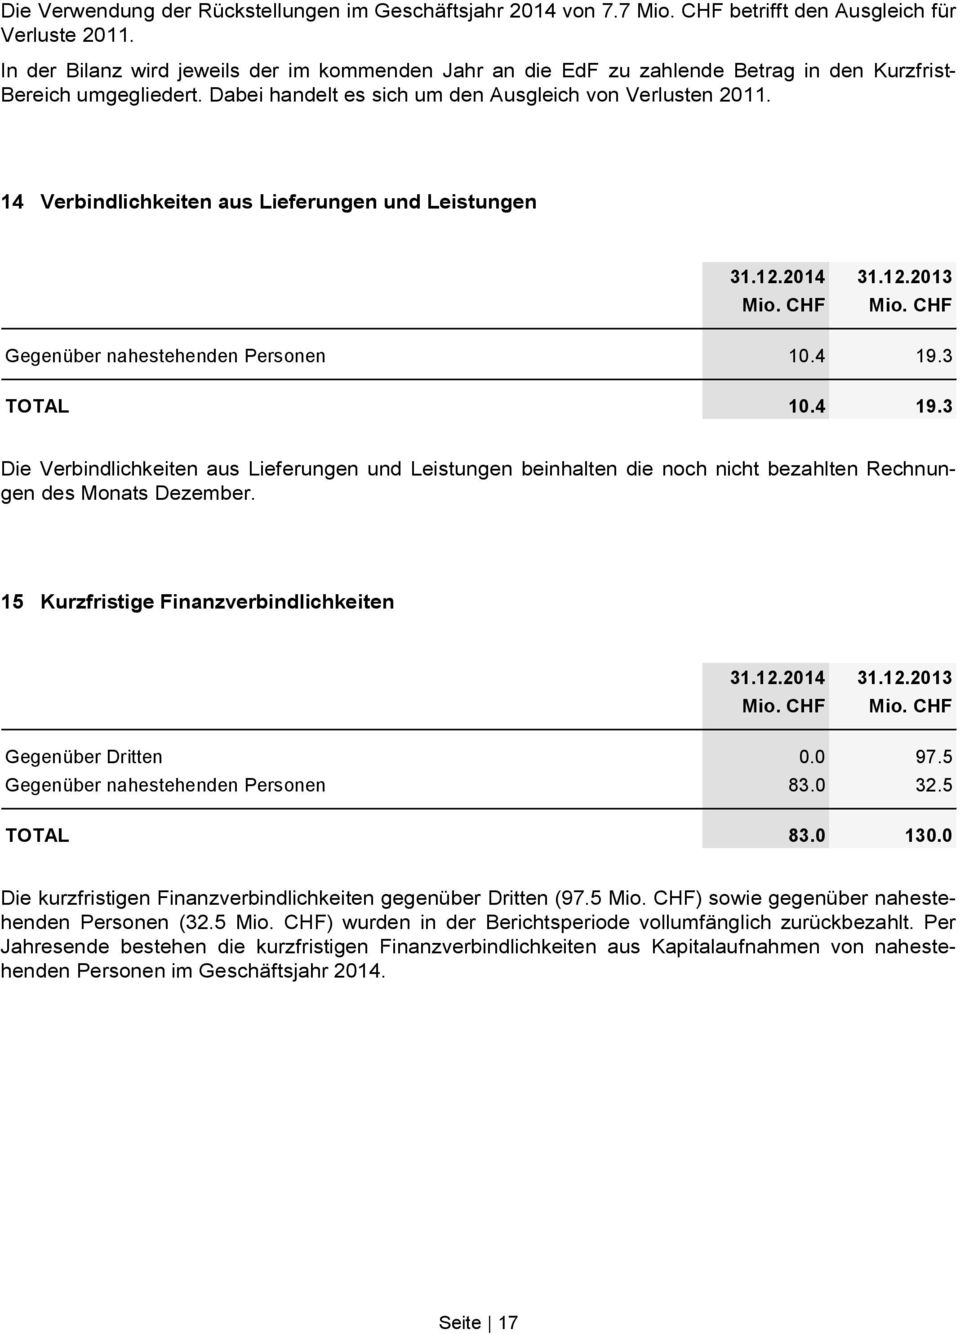 14 Verbindlichkeiten aus Lieferungen und Leistungen 31.12.2014 31.12.2013 Mio. CHF Mio. CHF Gegenüber nahestehenden Personen 10.4 19.